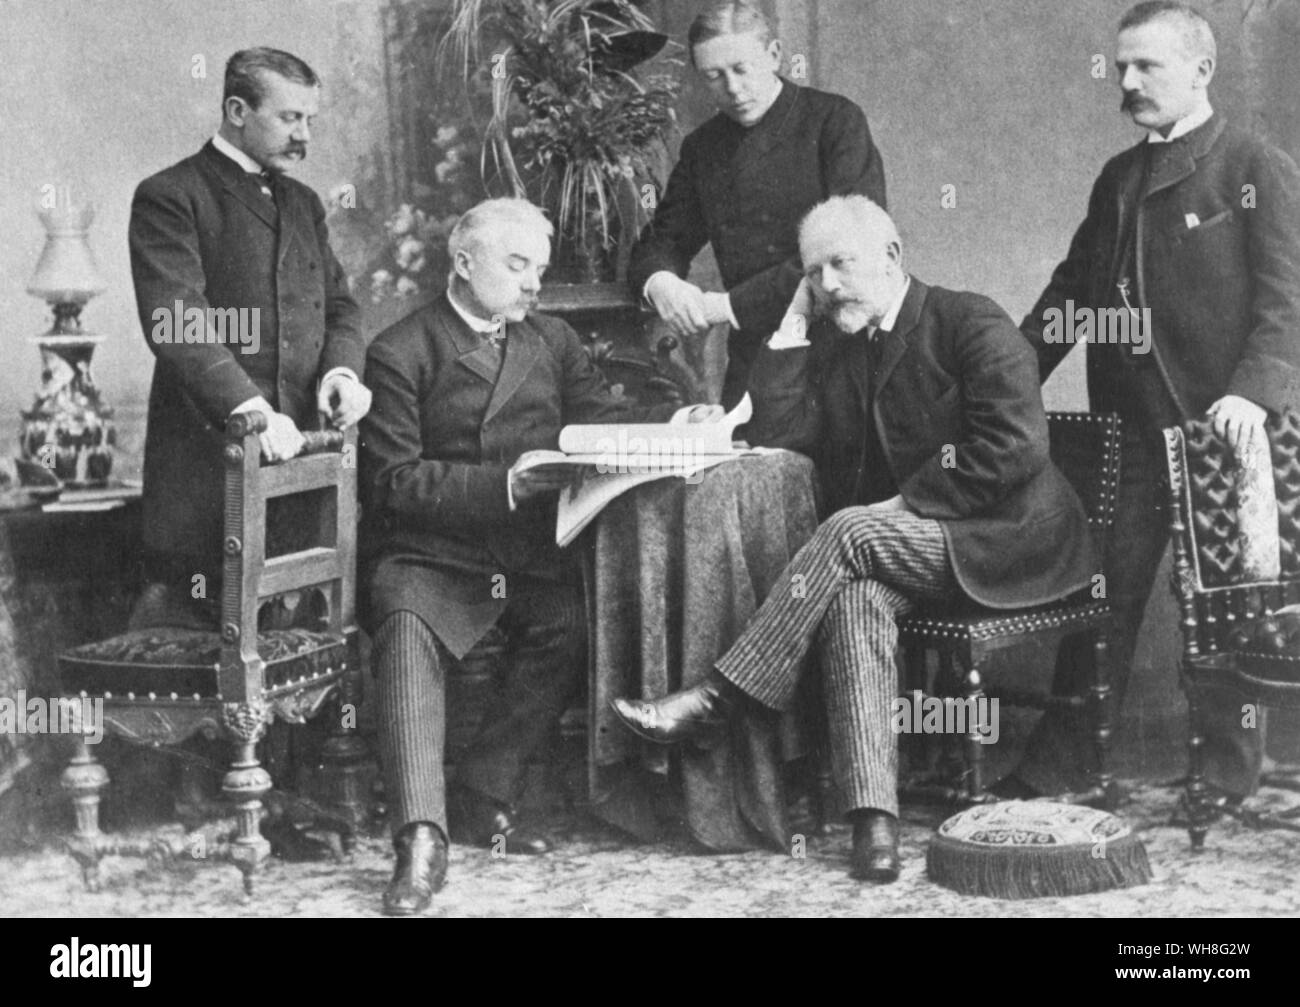 Das tschaikowsky Brüder von links nach rechts Anatoly, Nikolay, Ippolit, Pjotr und bescheiden. Pjotr Iljitsch Tschaikowski (1840-1893) war ein russischer Komponist der Romantik. Tschaikowsky von John Warrack Seite 264. Stockfoto